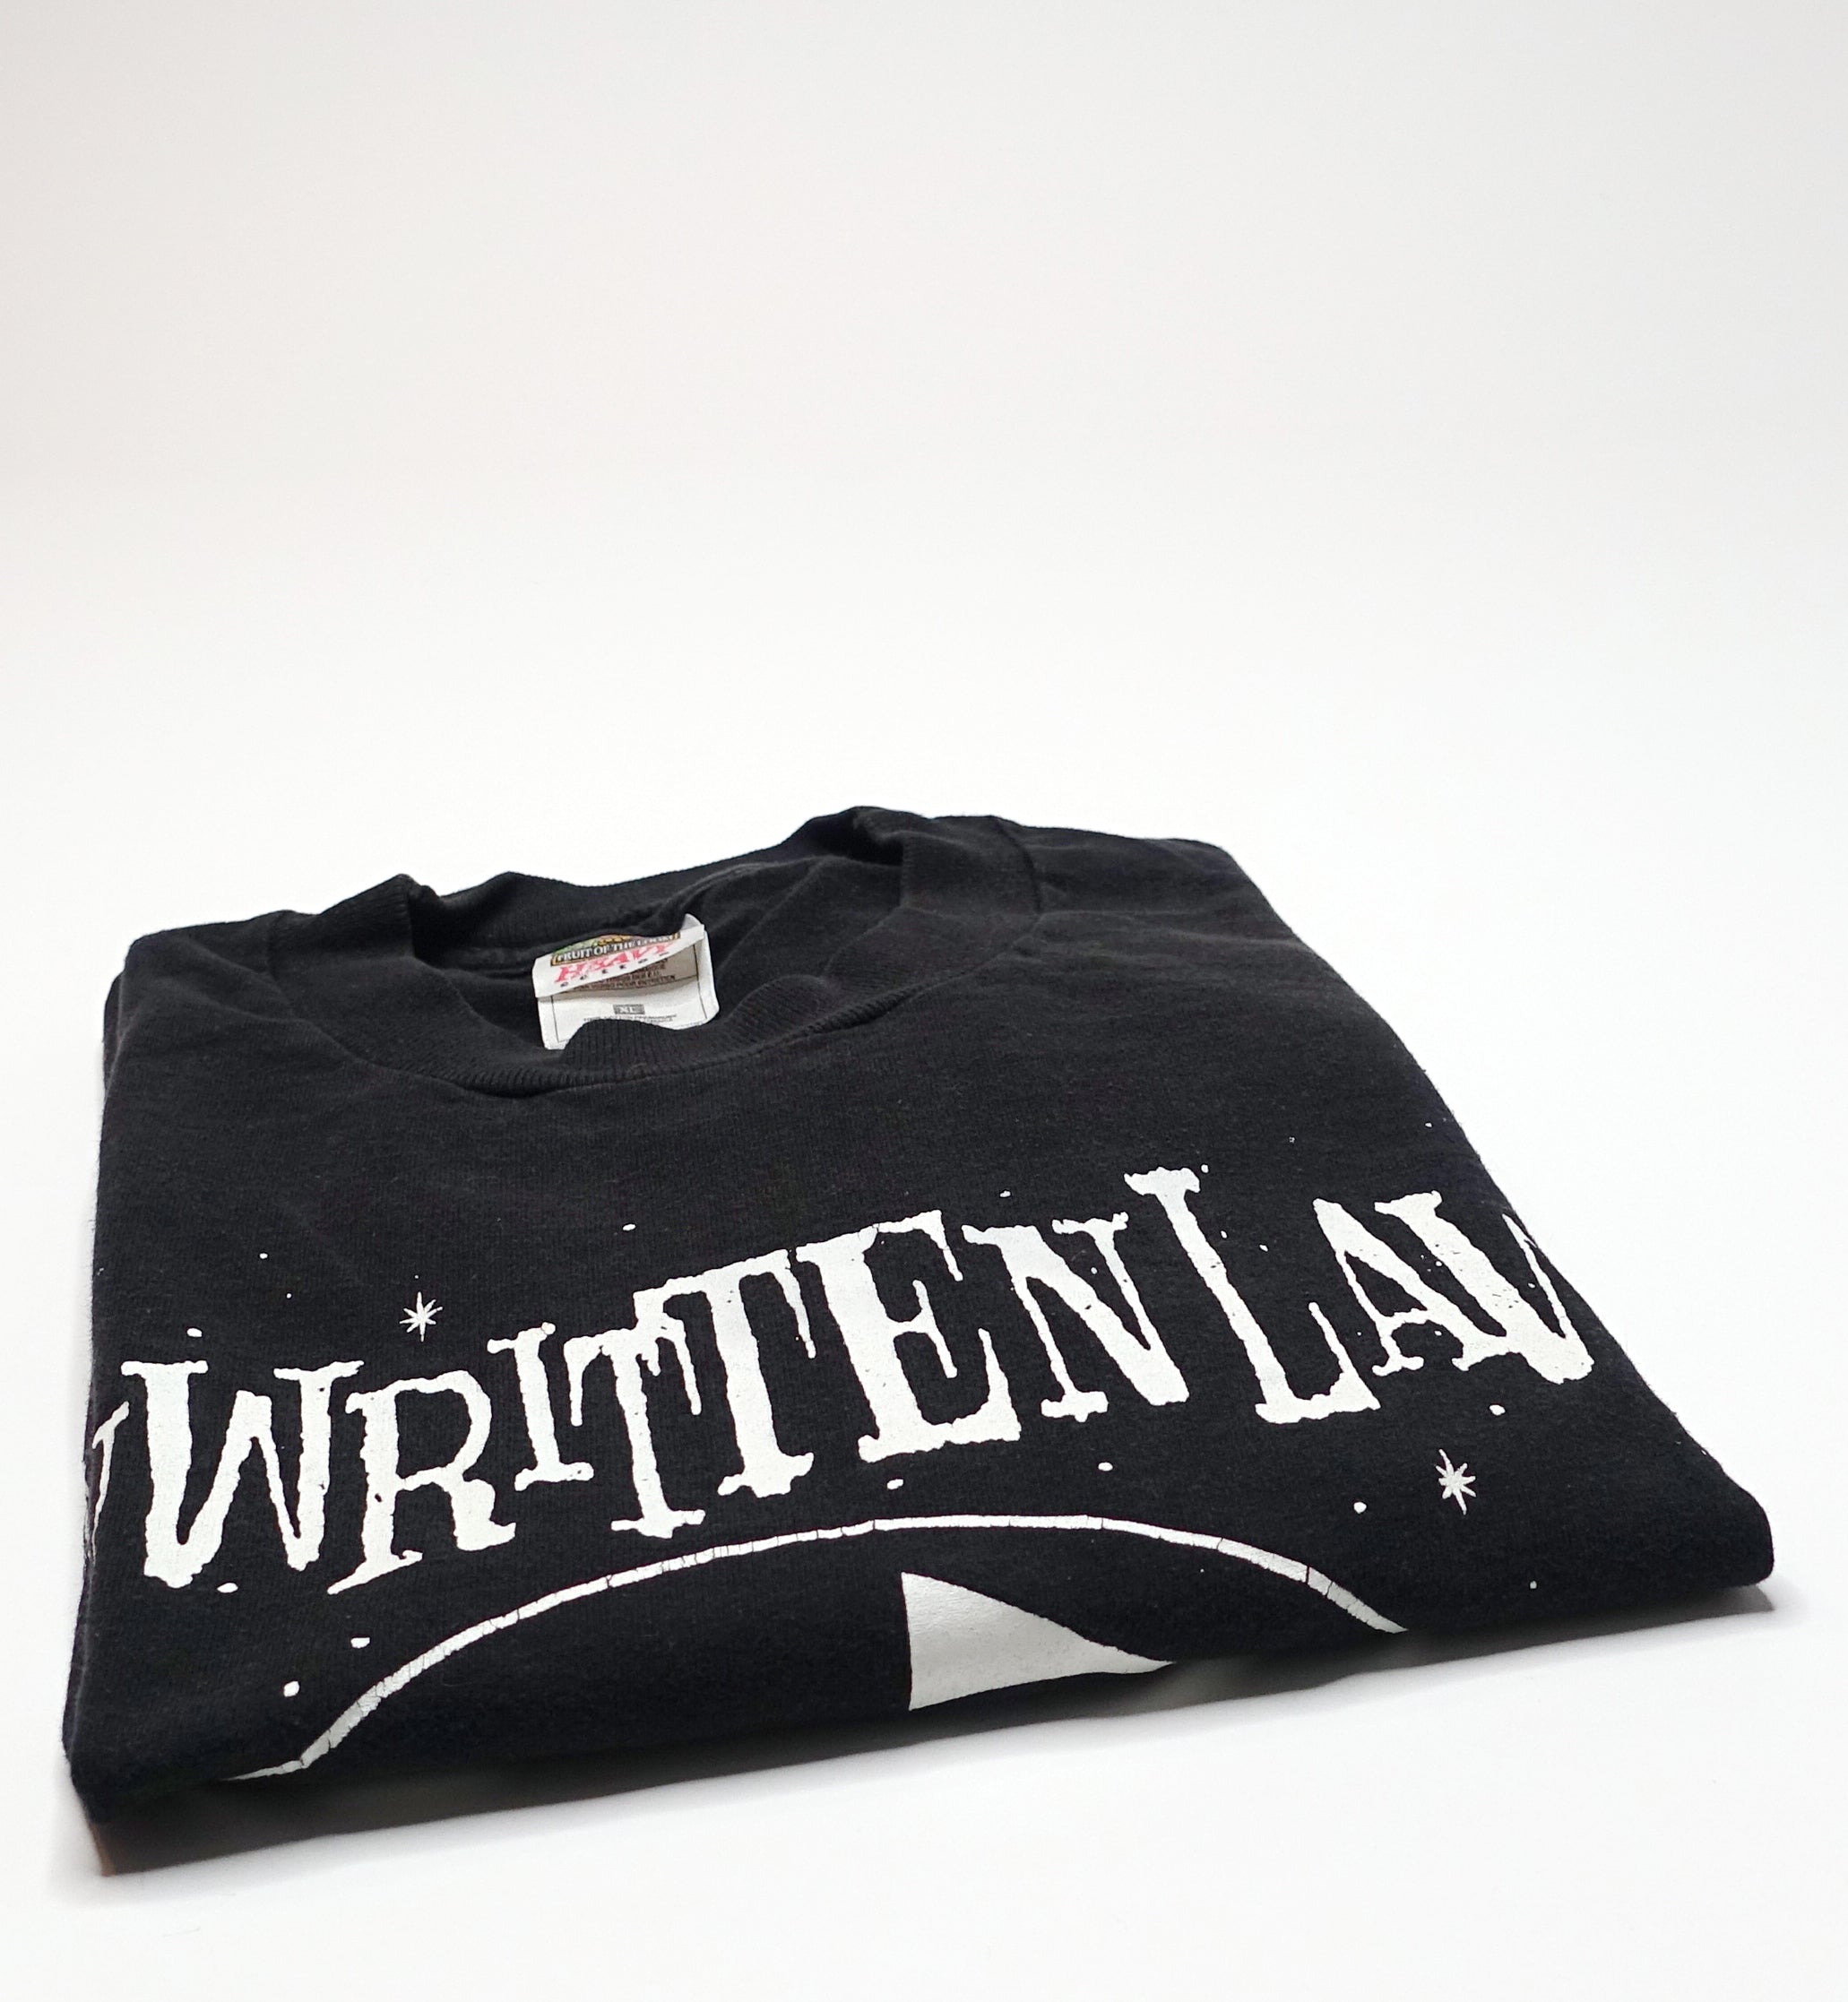 Unwritten Law – Aliens 90's Tour Shirt Size XL